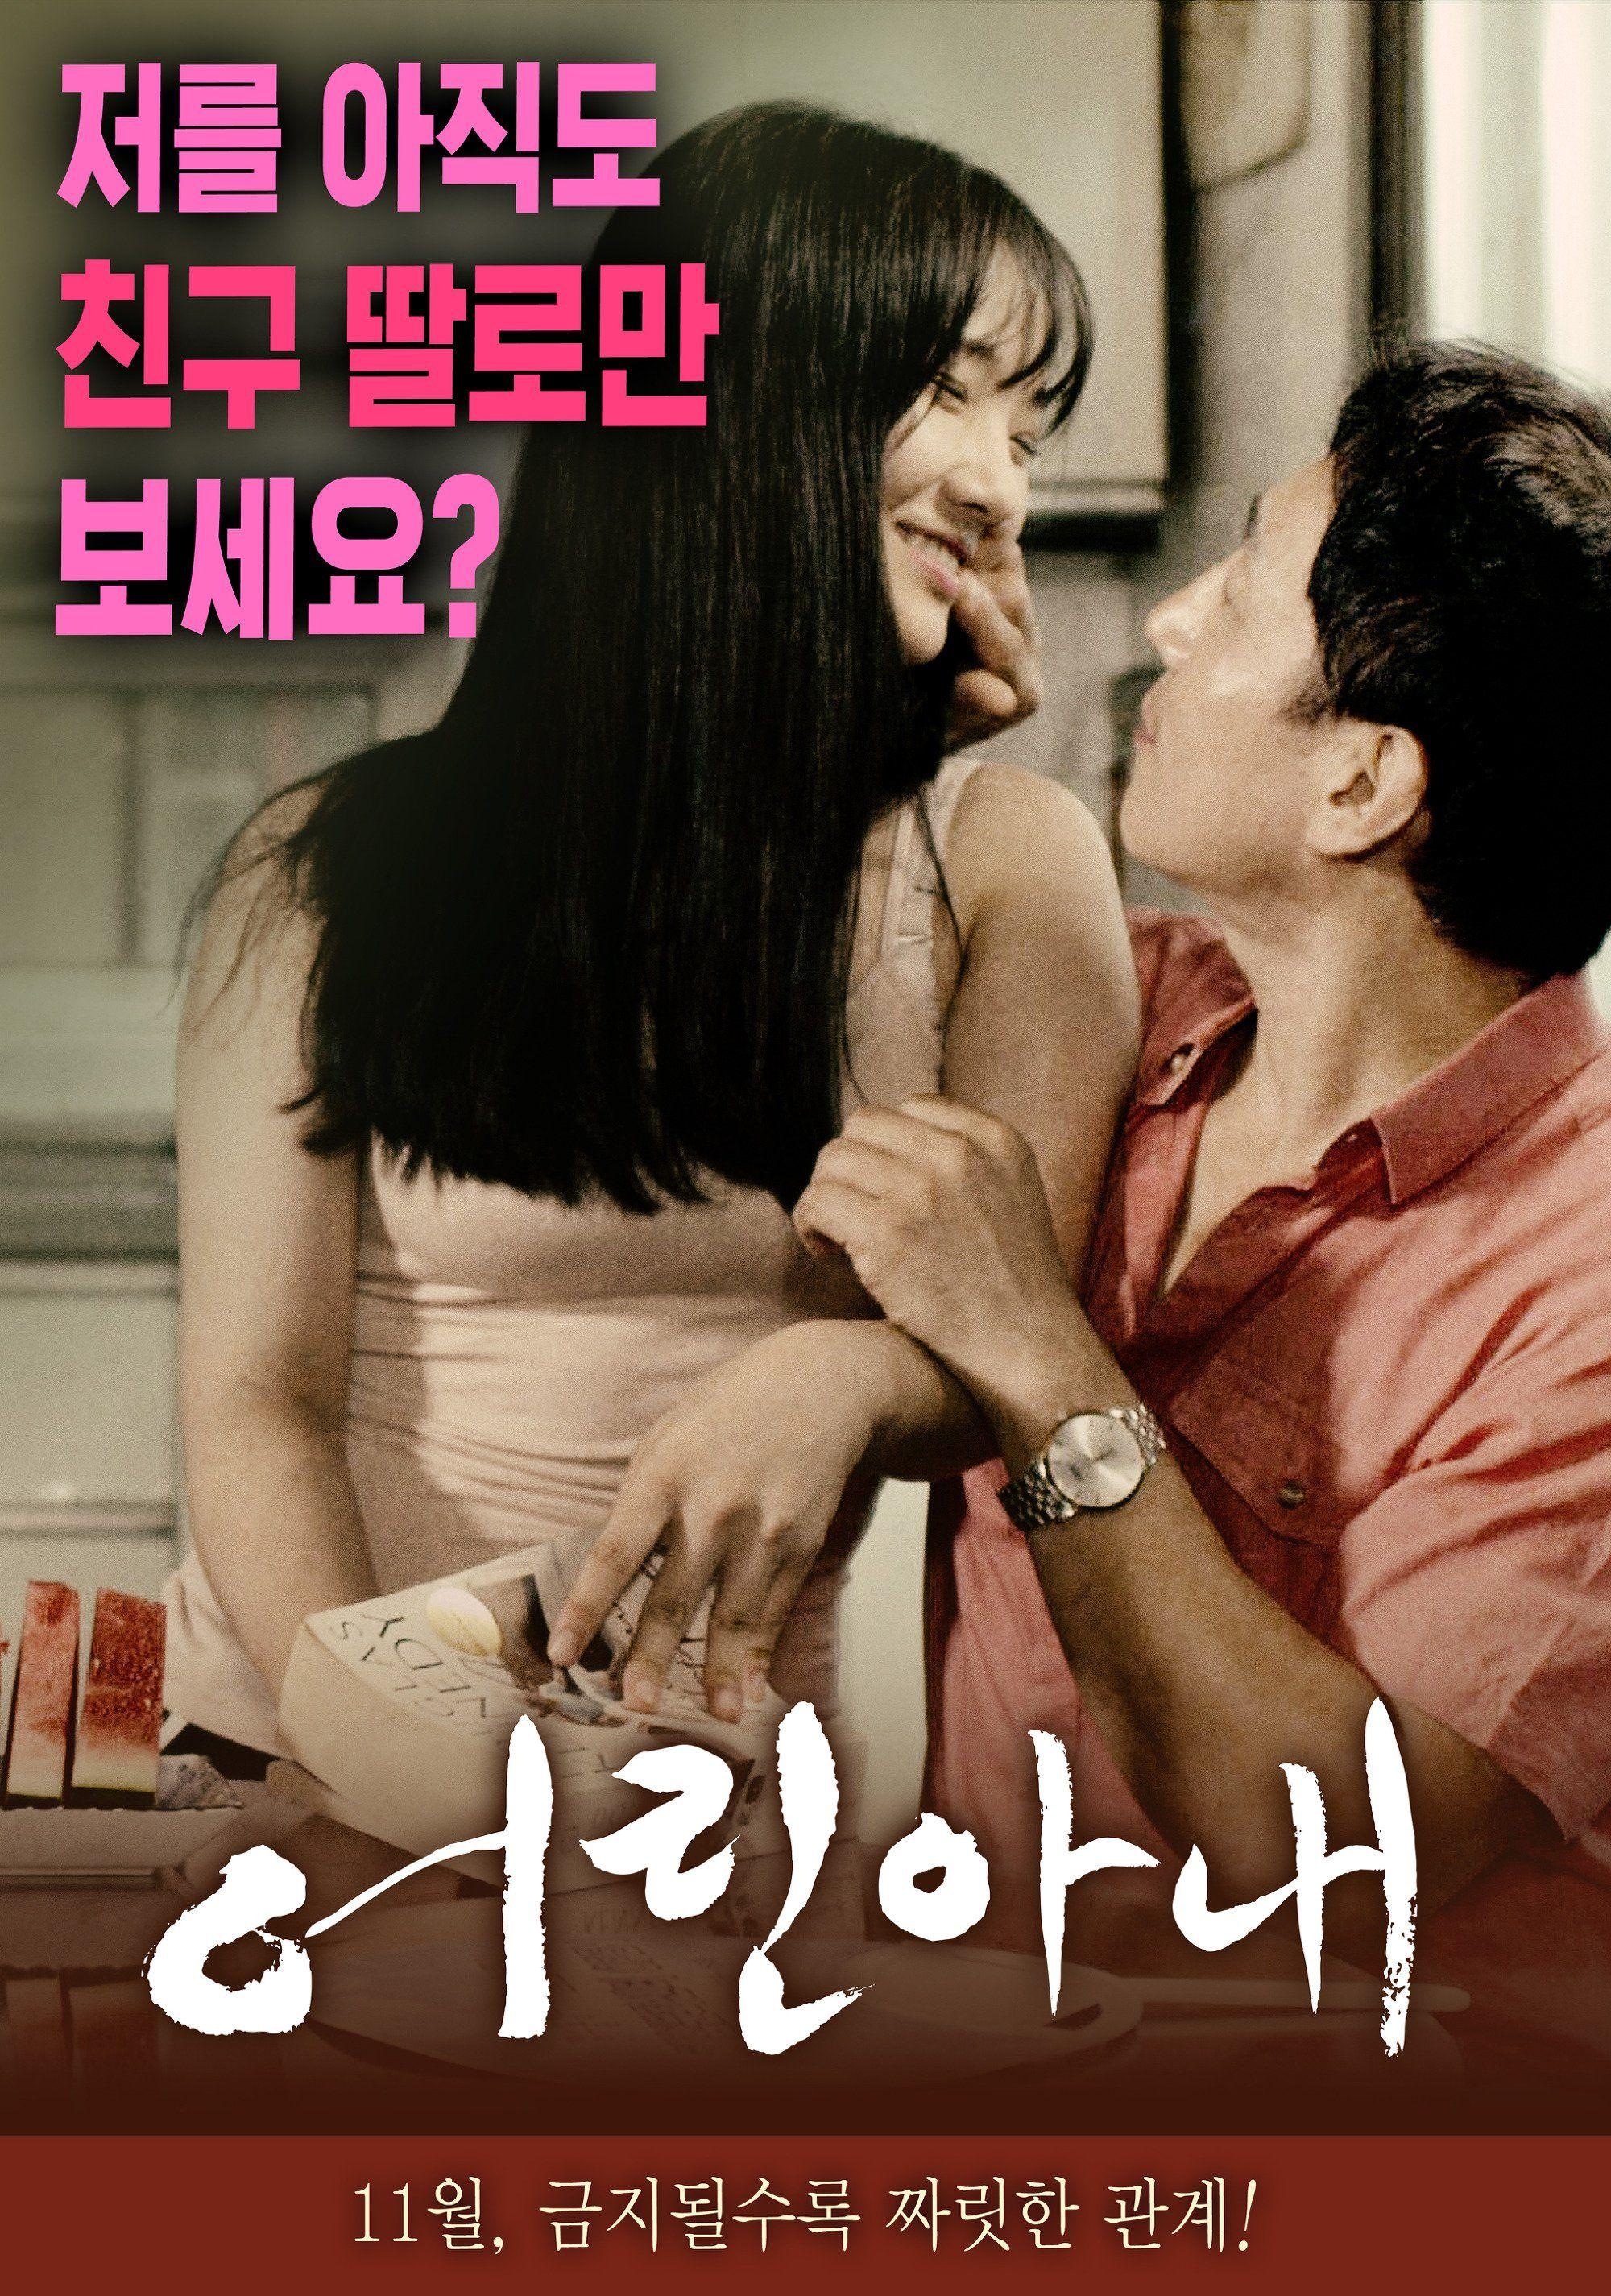 dana stoker share watch korean erotic movies photos